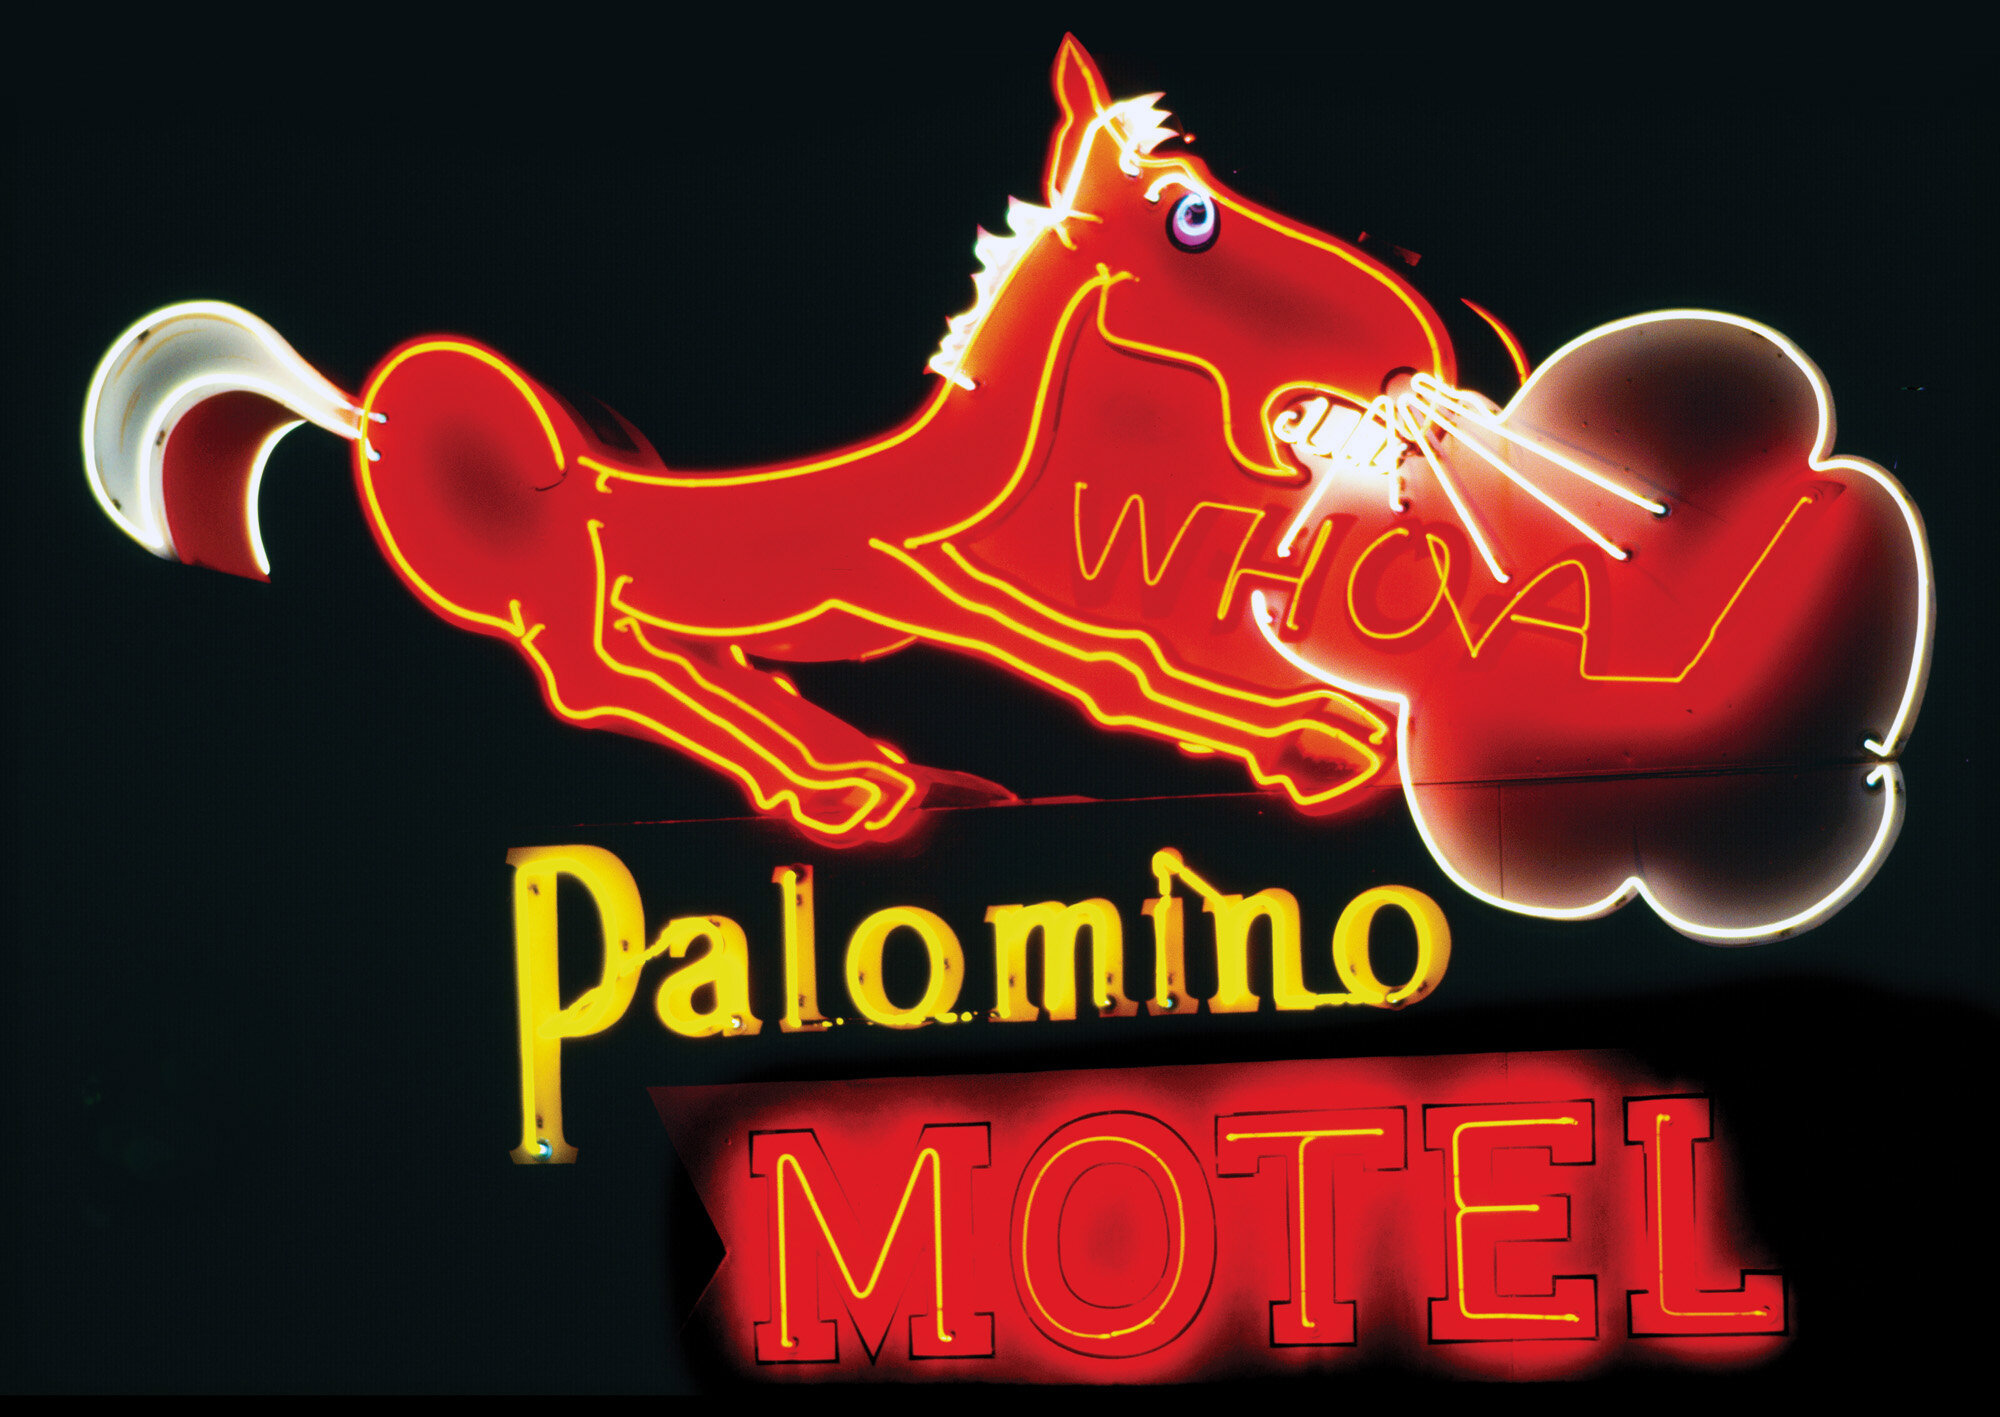 Palomino motel rd91af